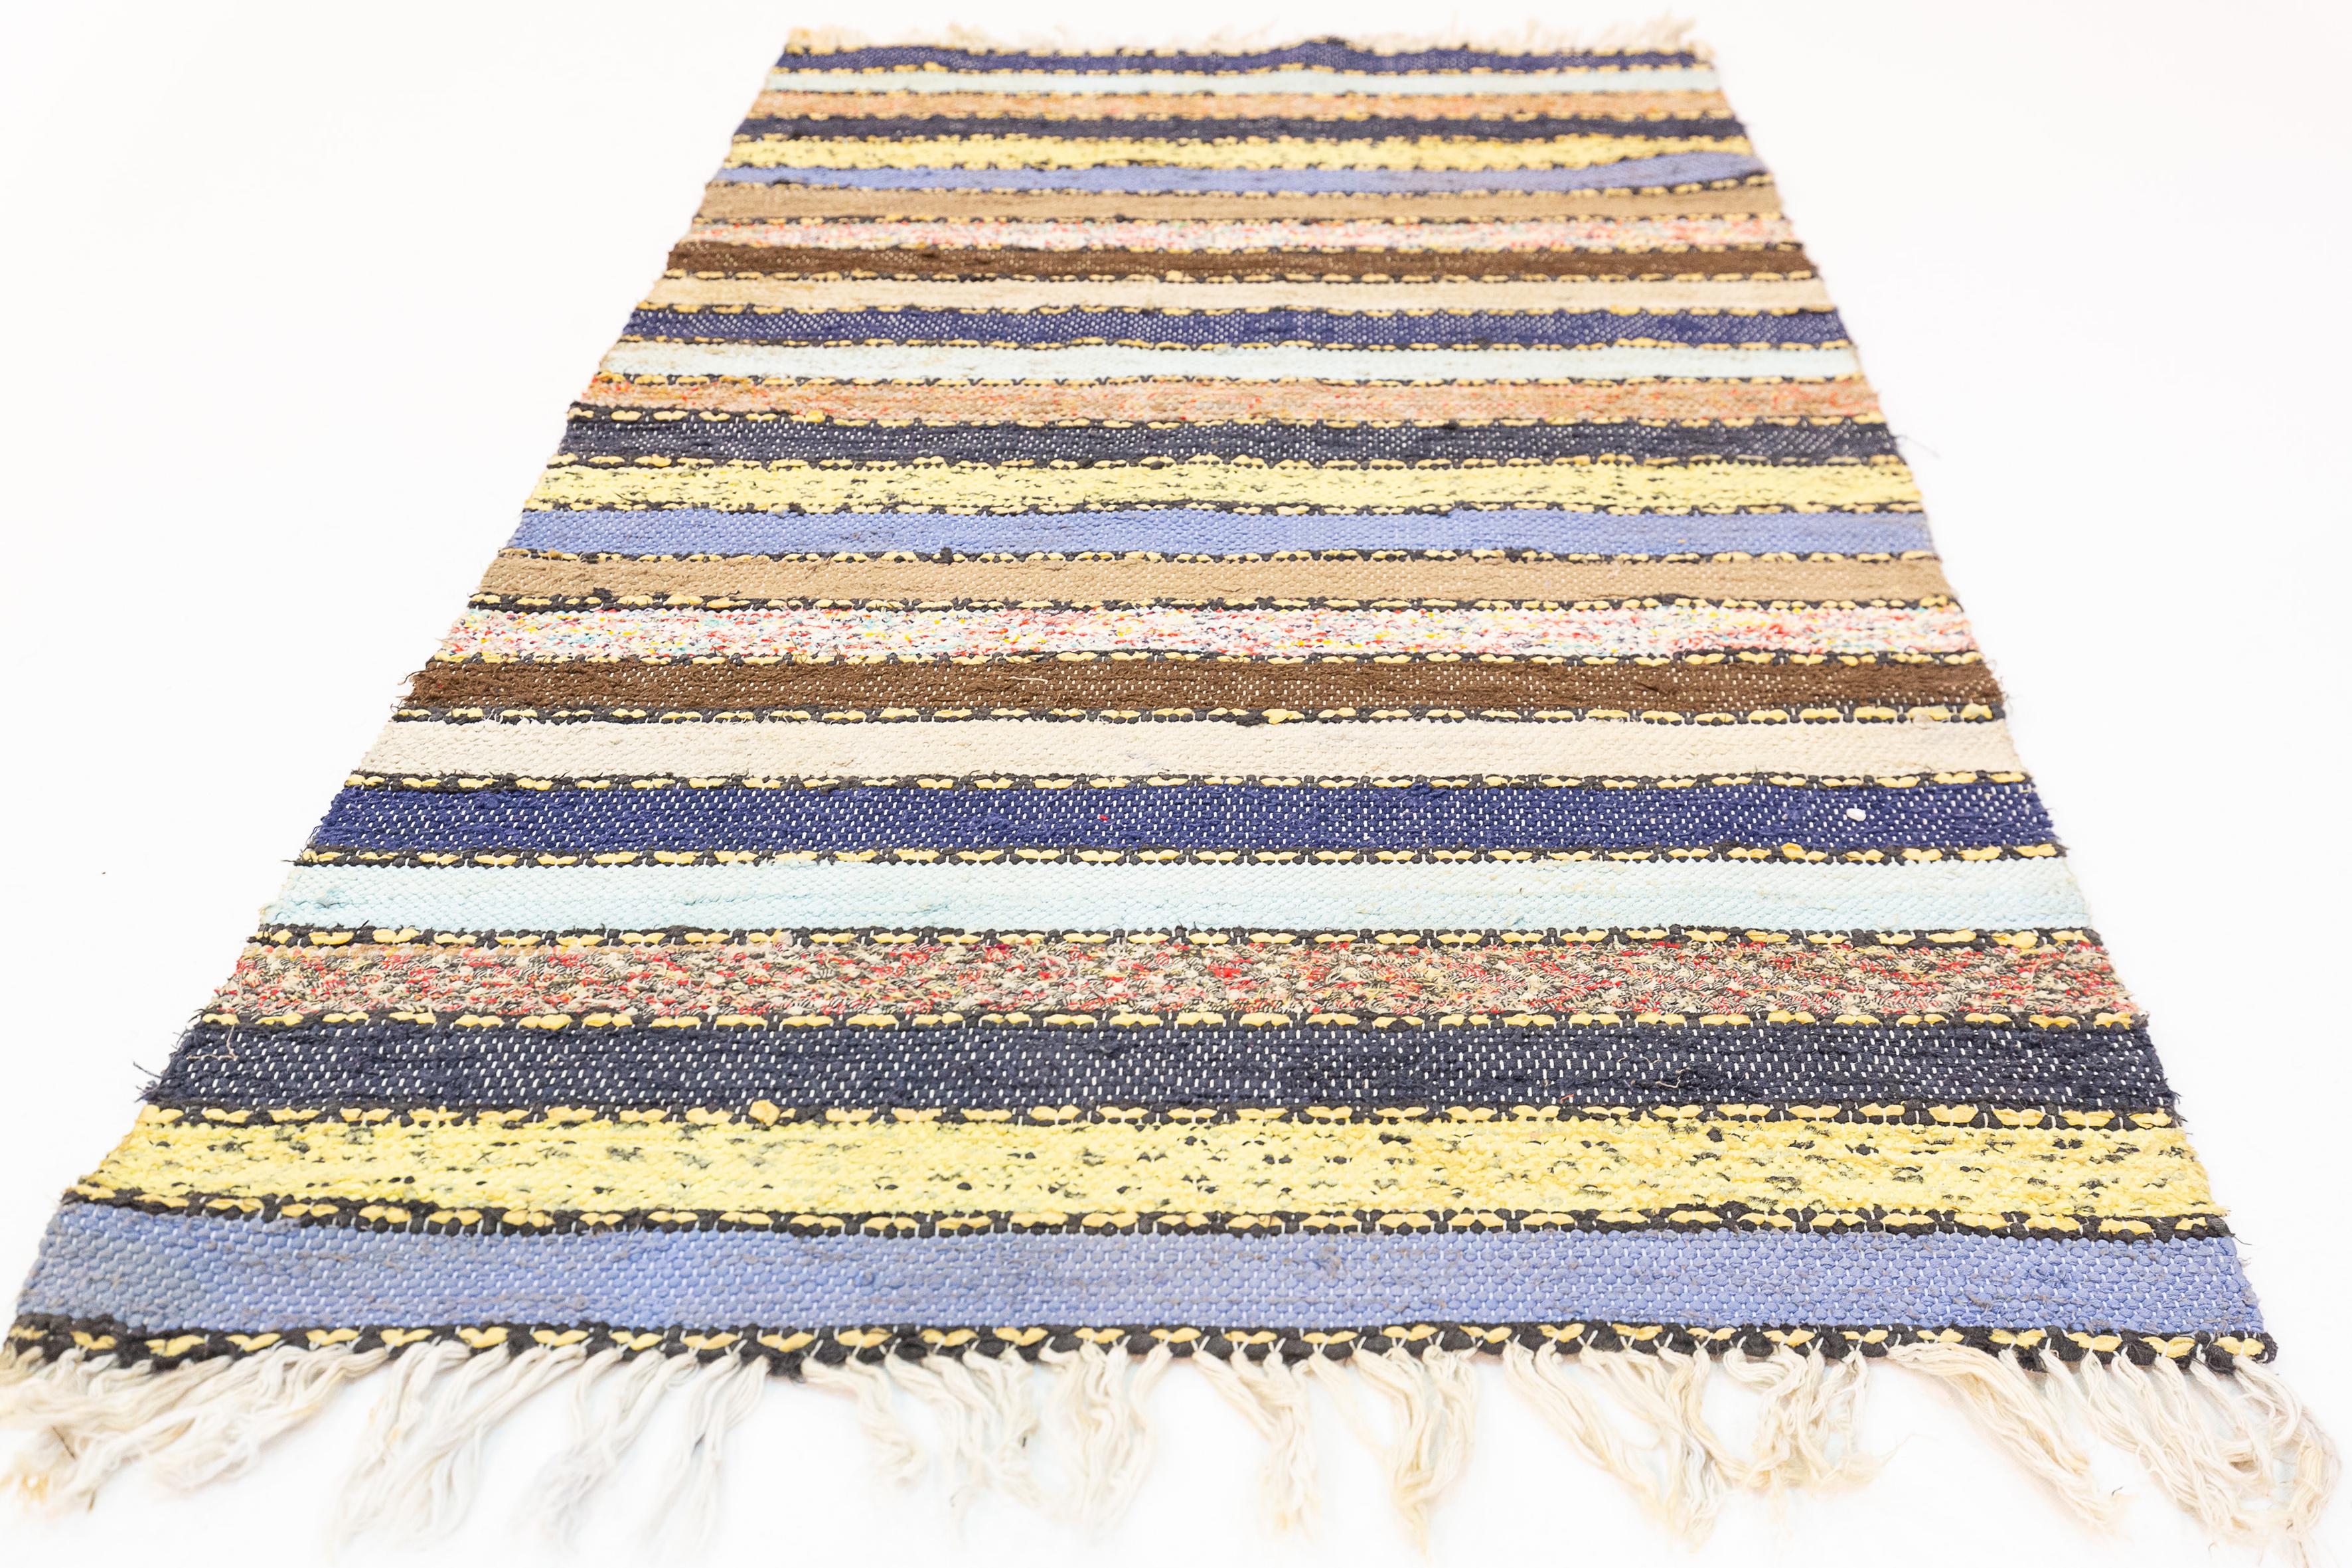 Cette pièce est un tapis suédois à tissage plat, communément appelé 